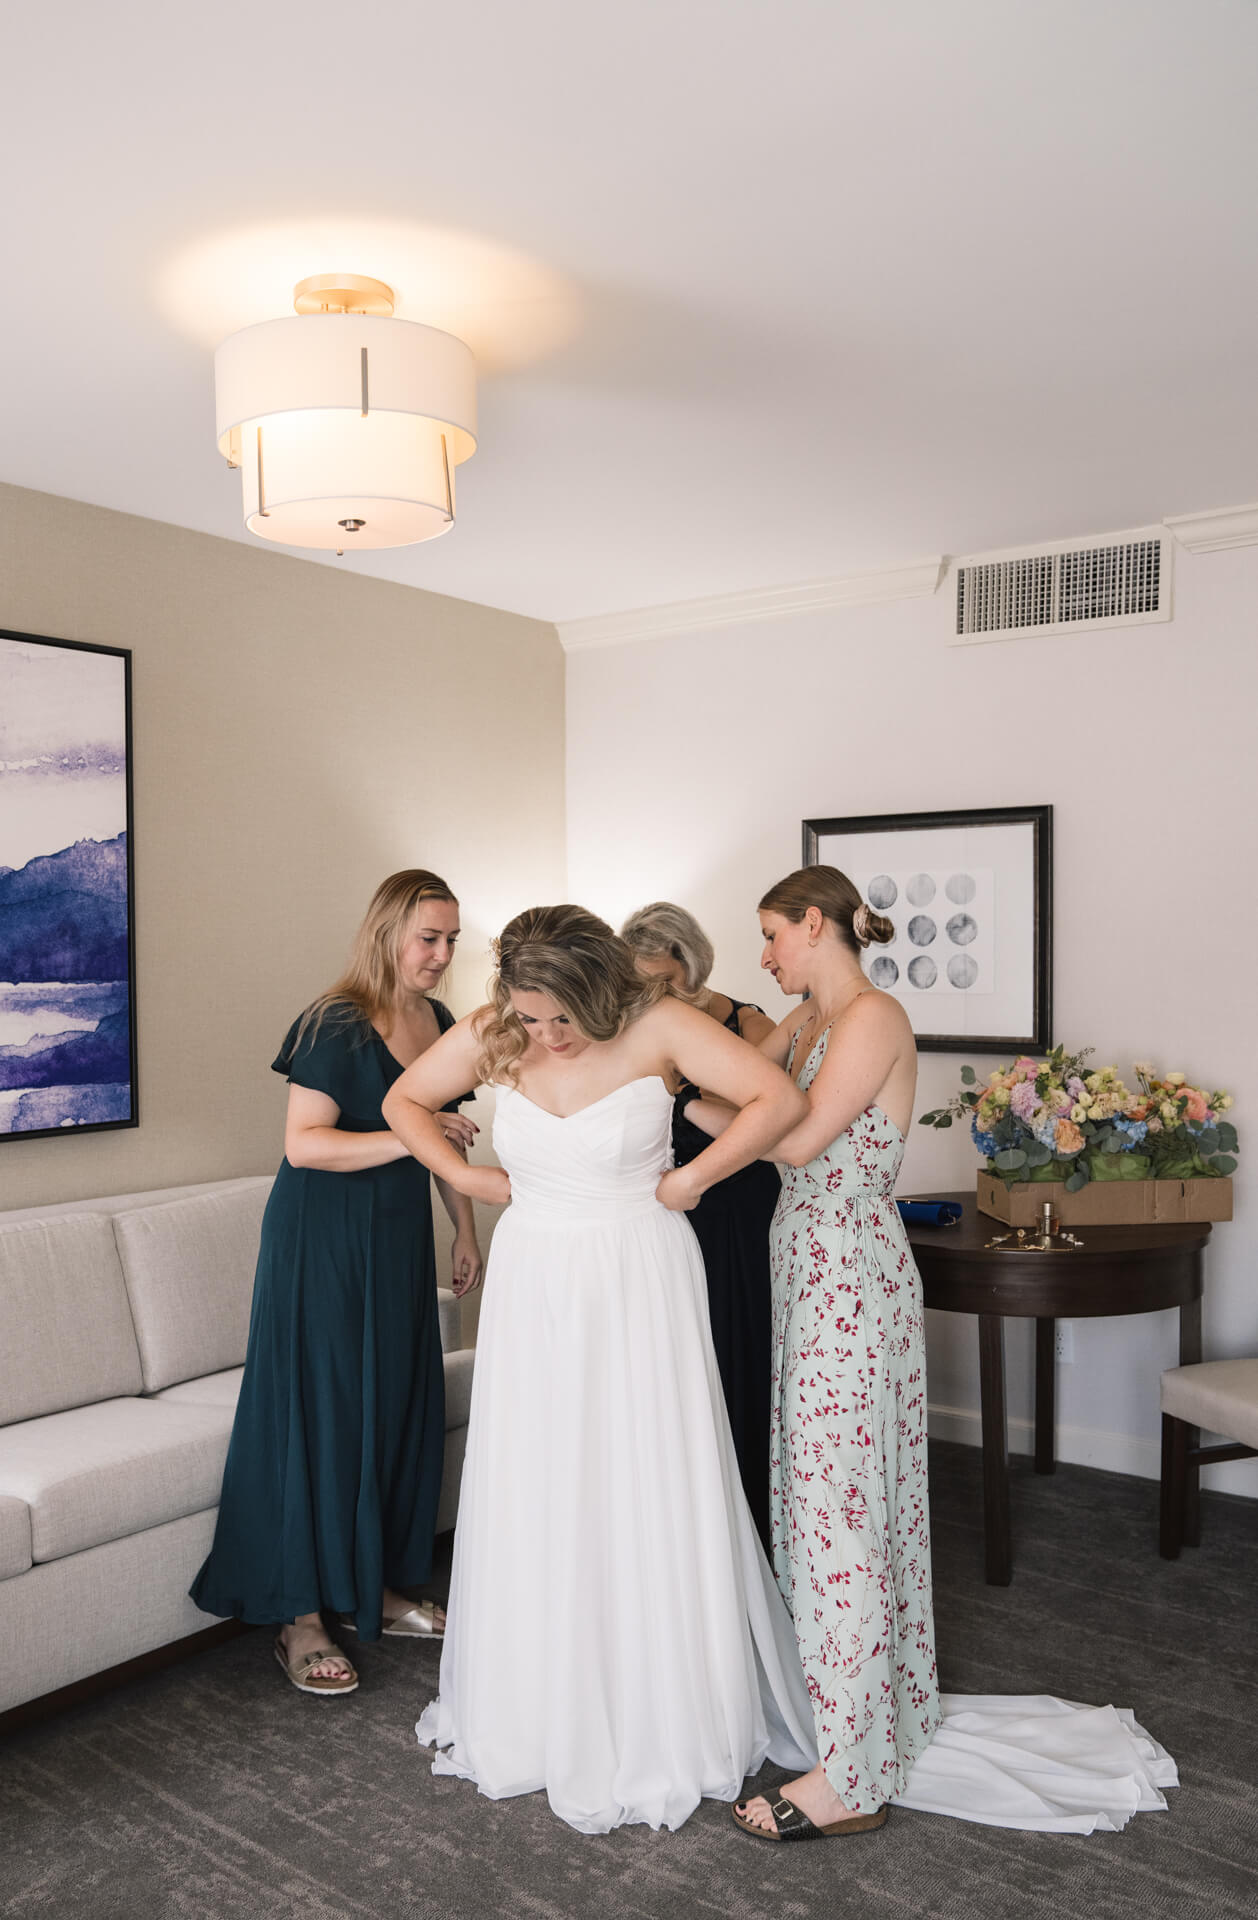 Trauzeuginnen helfen der Braut in ihr weißes Kleid hinein.